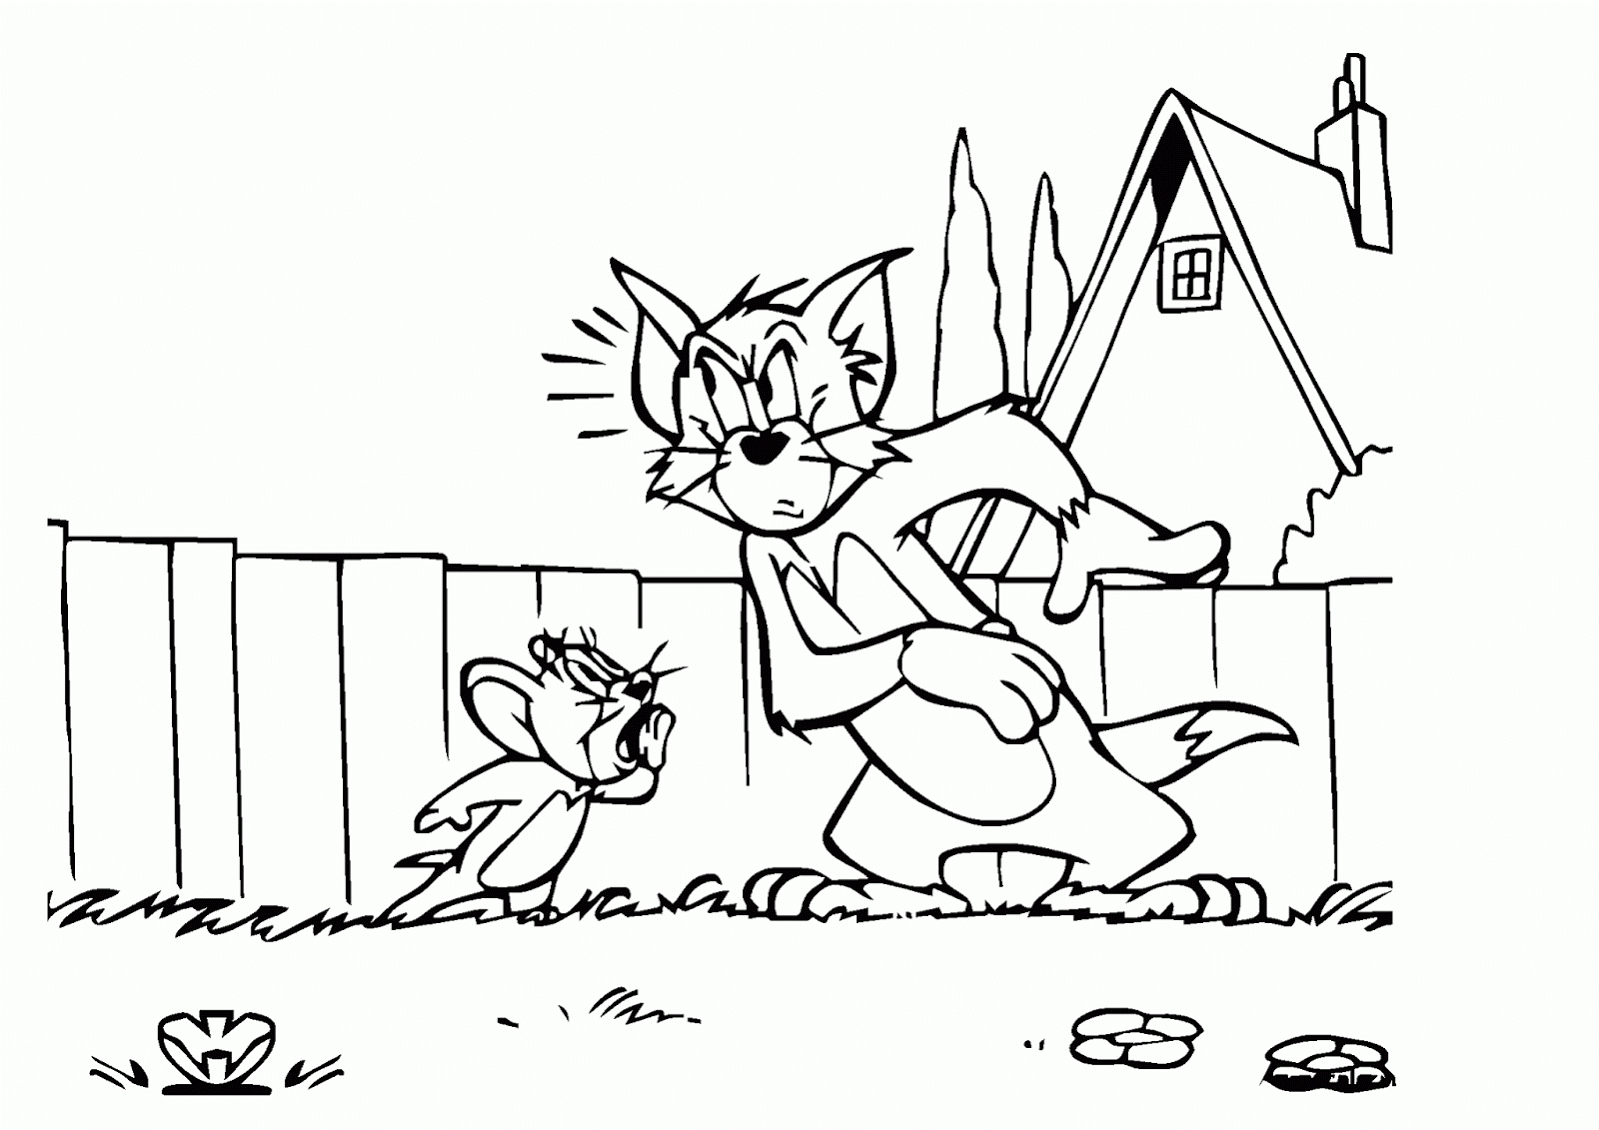 Tổng hợp các bức tranh tô màu Tom and Jerry cho bé